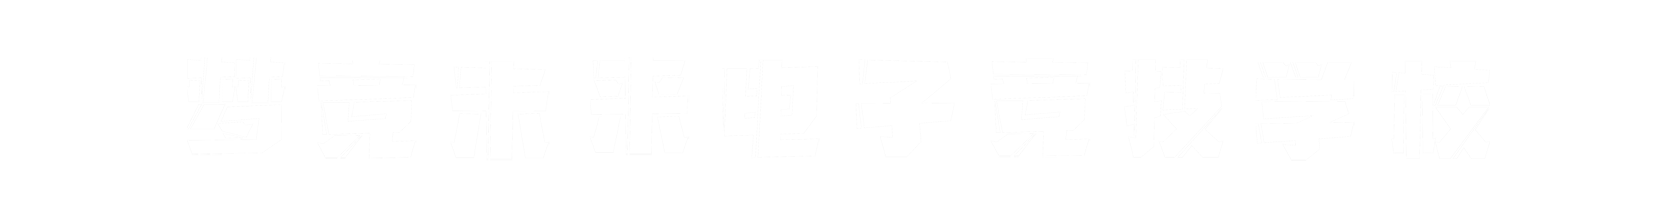 梦竞未来泰州banner字